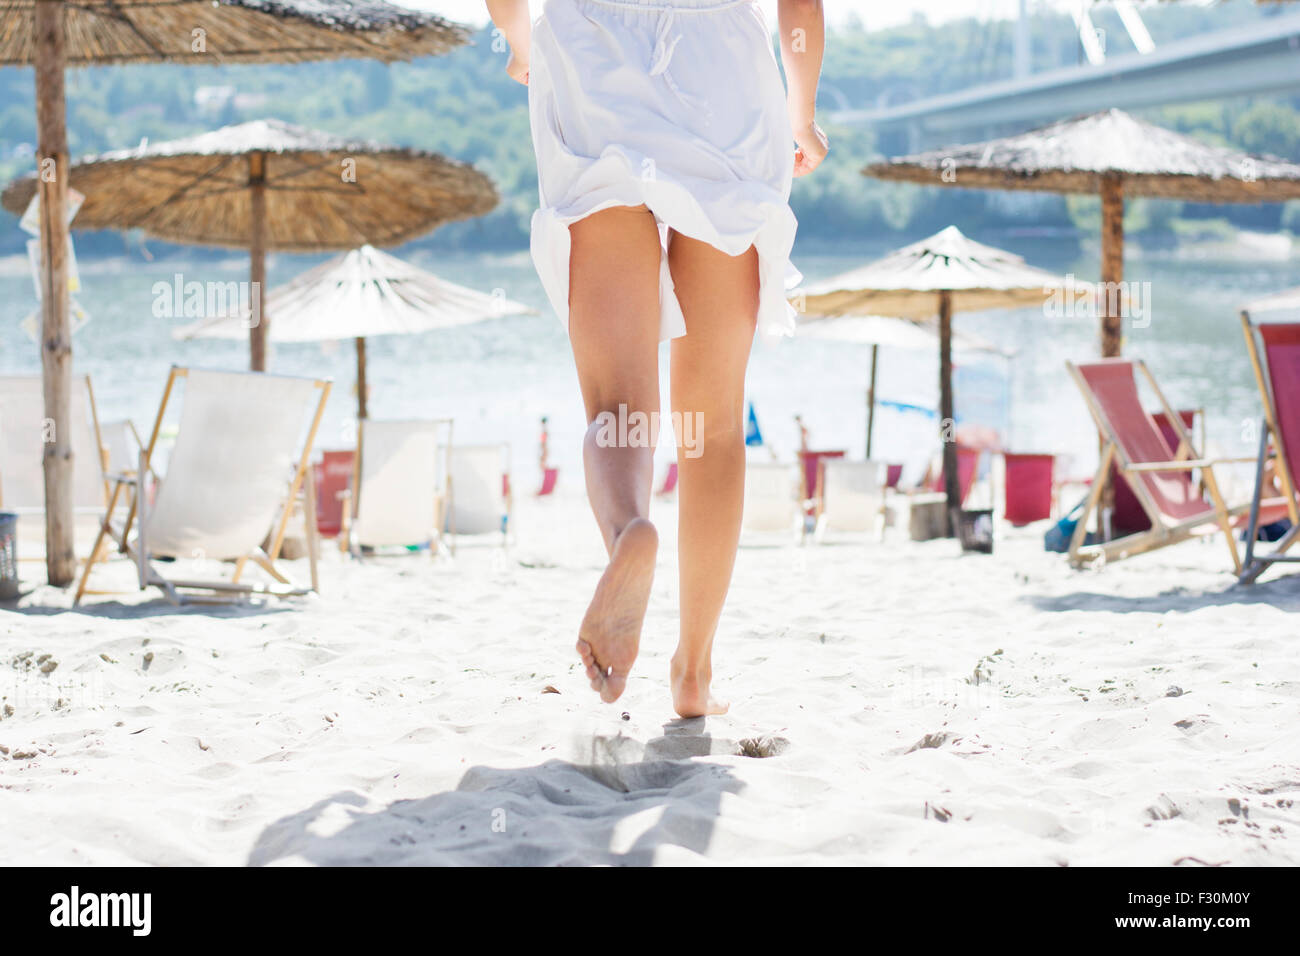 La donna in bianco abiti estivi in esecuzione sulla spiaggia di sabbia tra le sedie a sdraio e ombrelloni, in vista posteriore Foto Stock